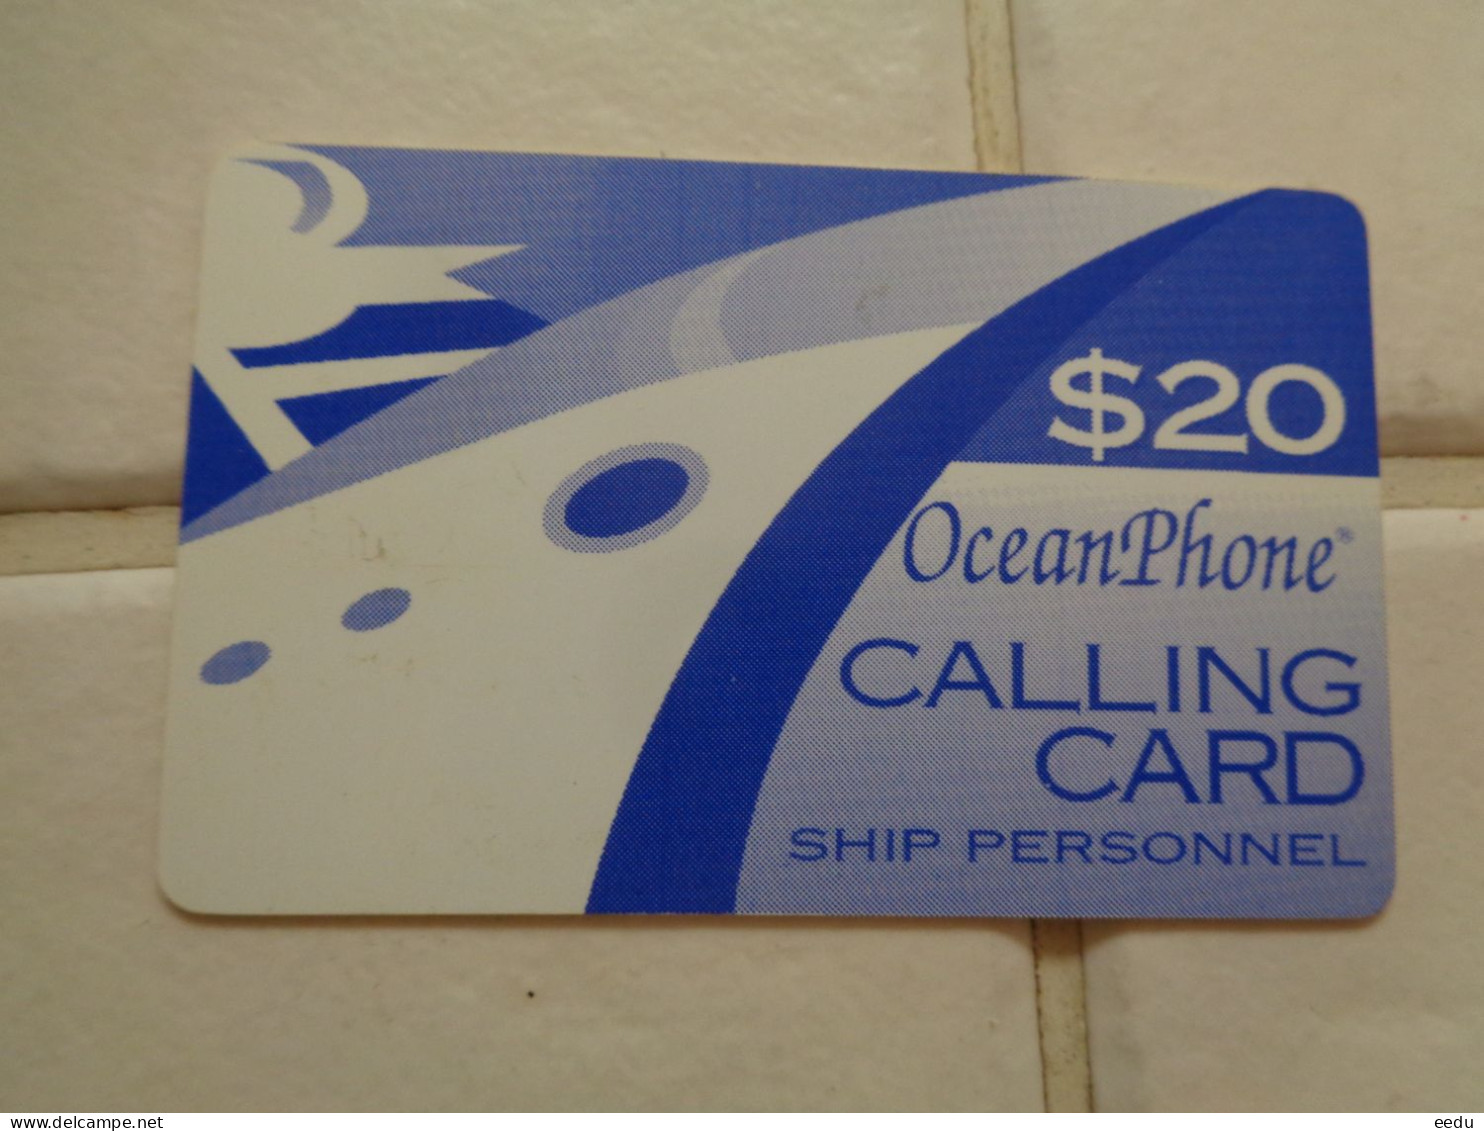 US Virgin Islands Phonecard - Vierges (îles)